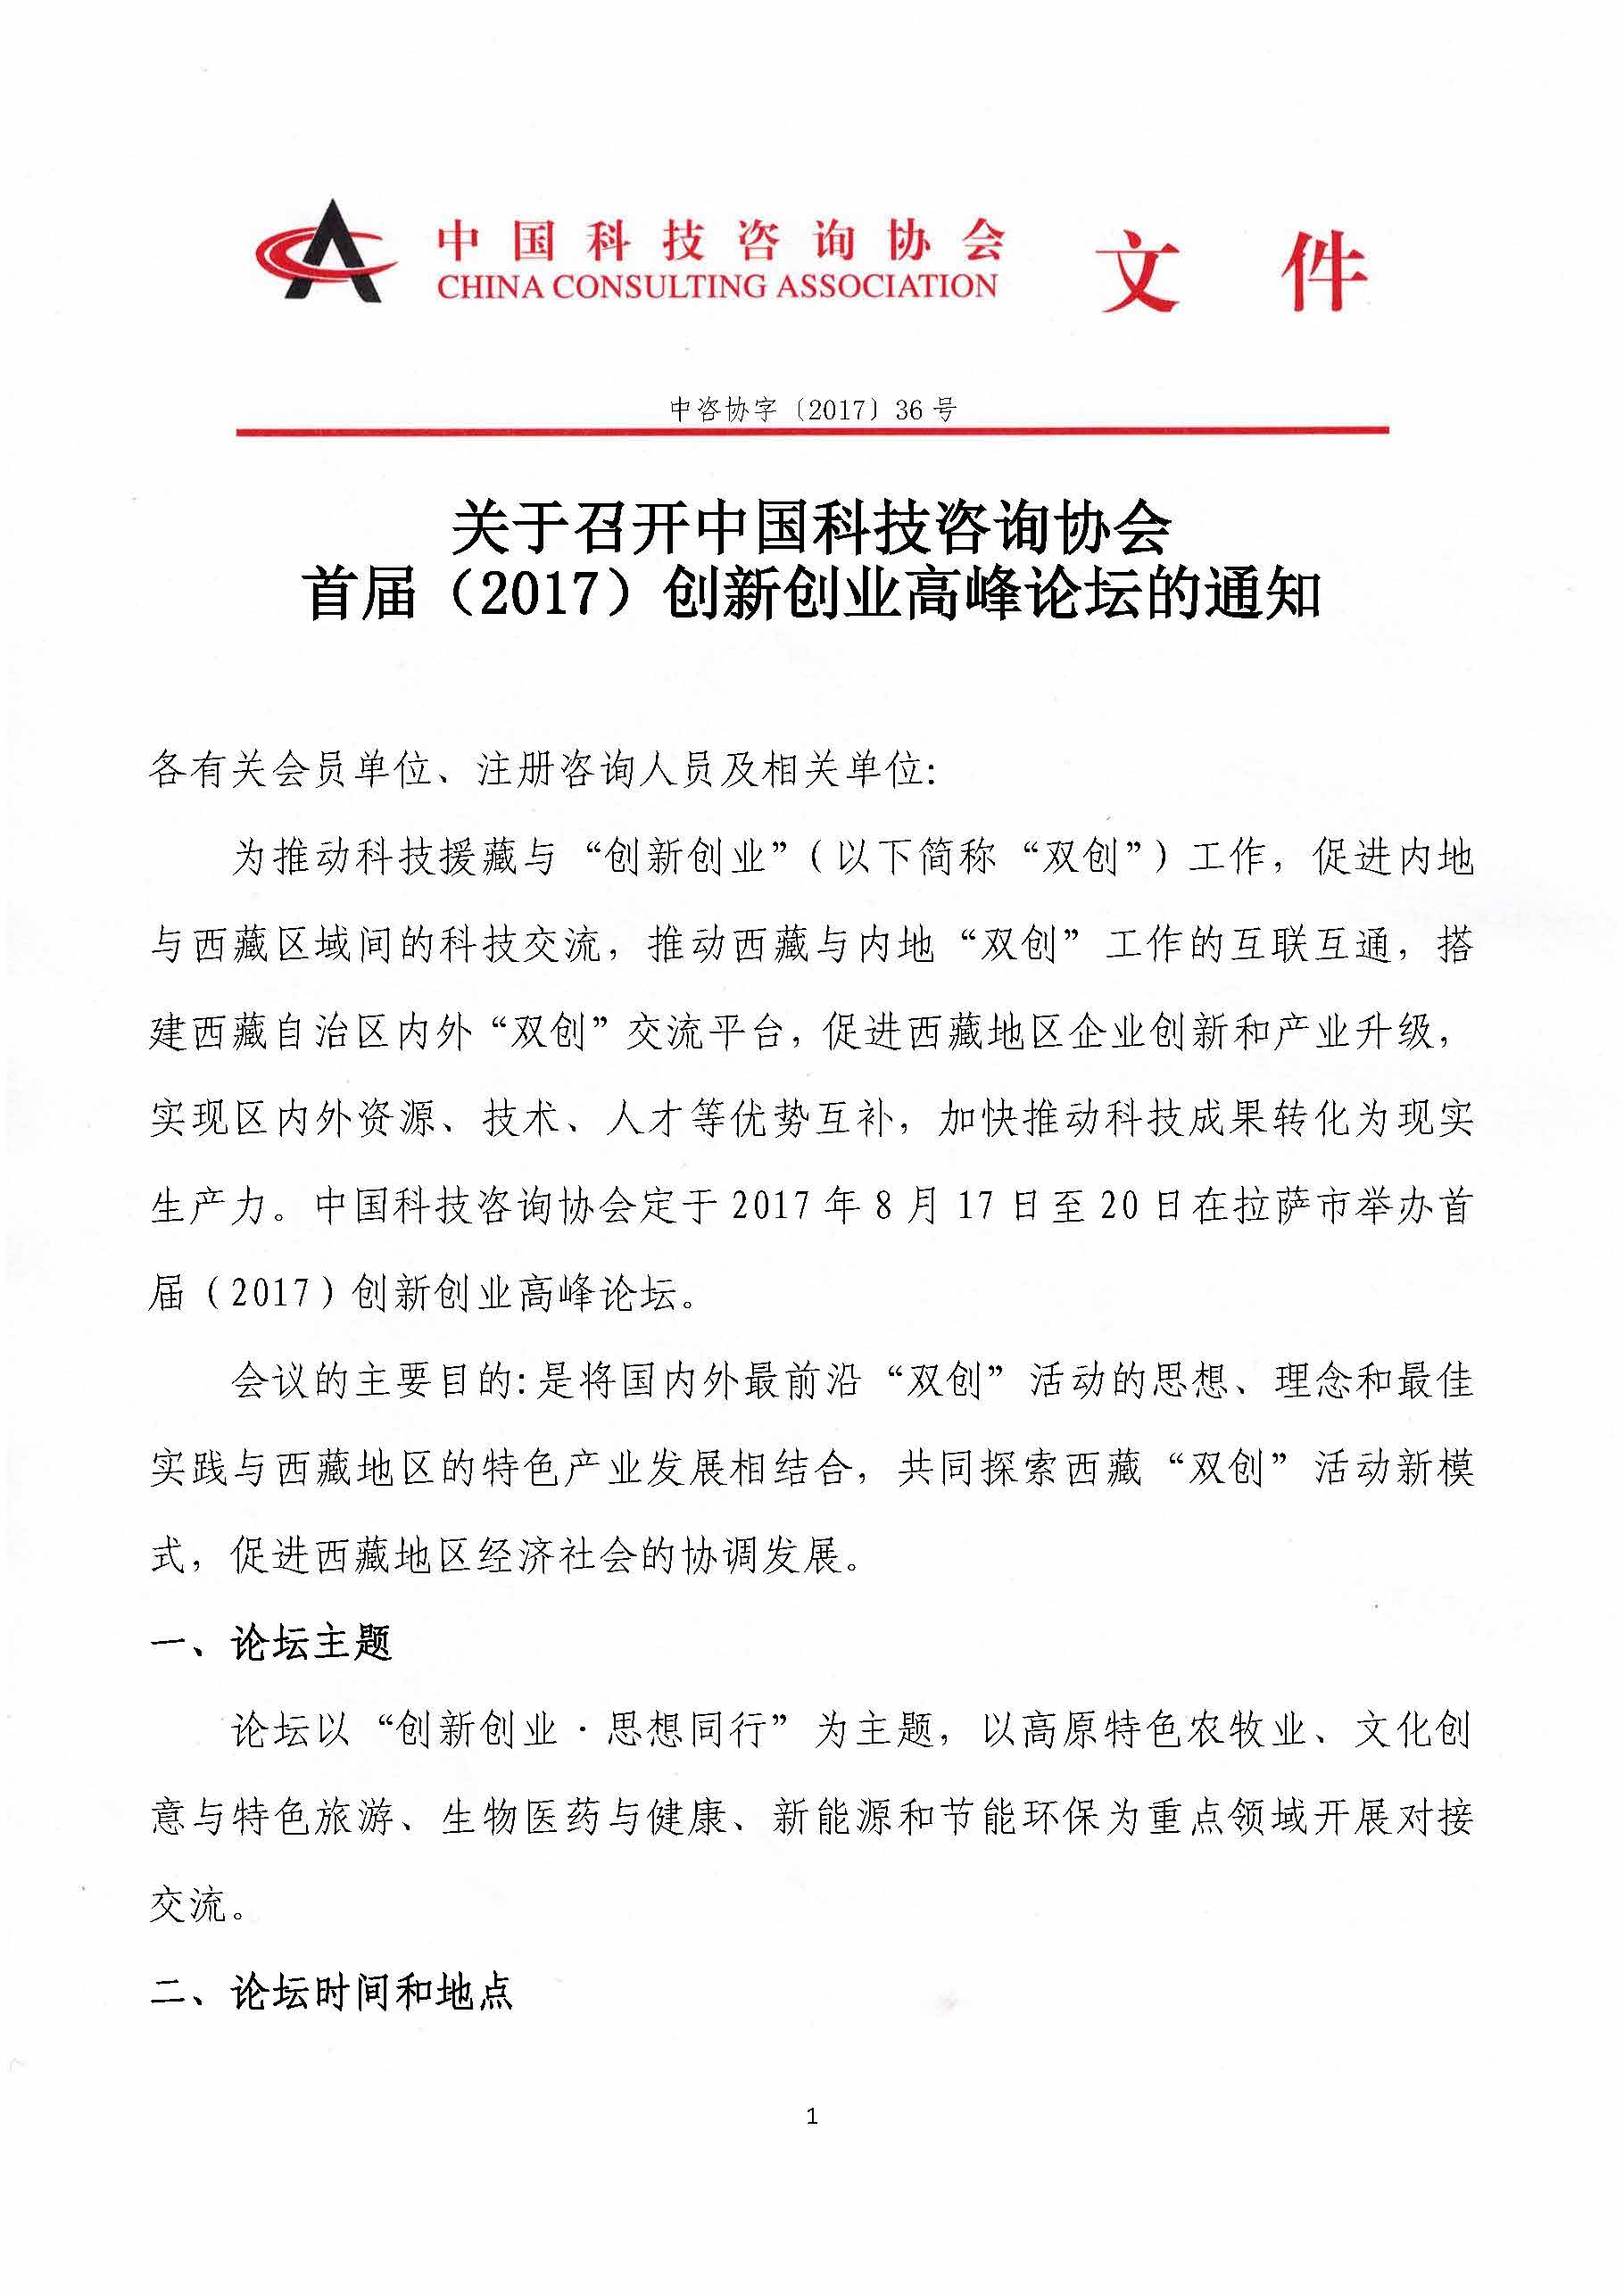 关于召开中国科技咨询协会首届（2017）创新创业高峰论坛的通知_页面_1.jpg